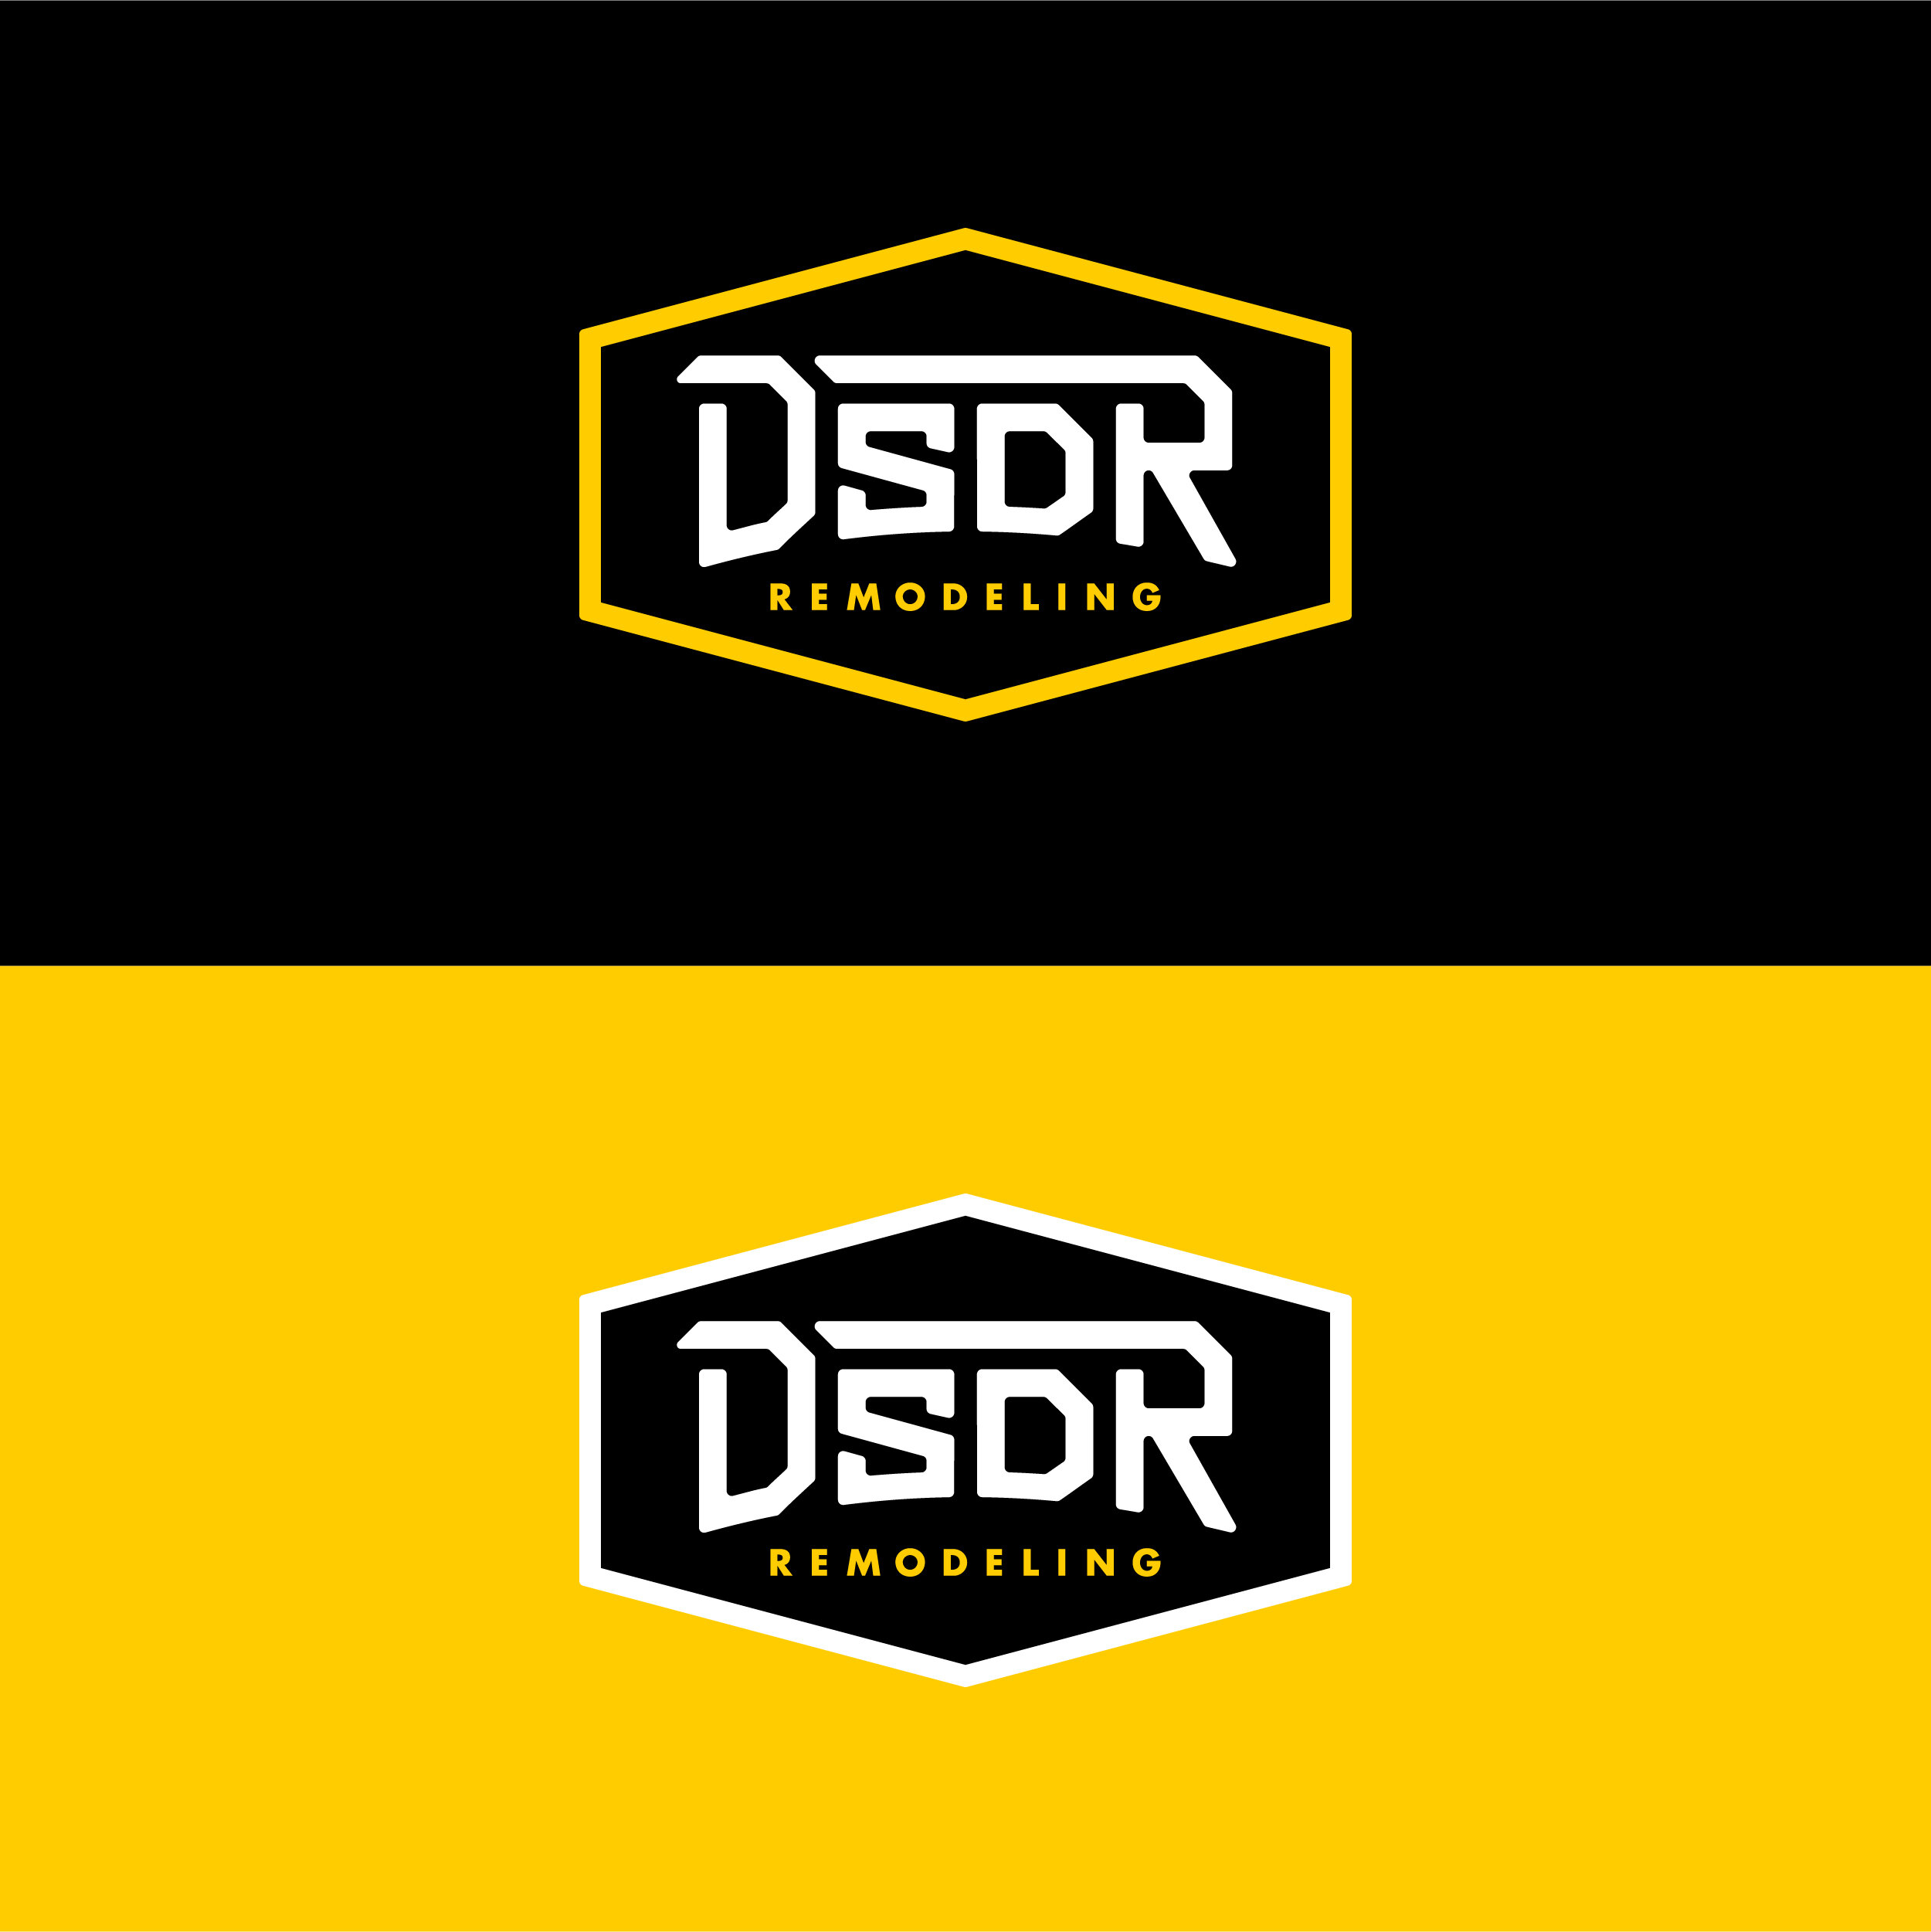 DSDR-Remodeling-Branding_Logo.jpg